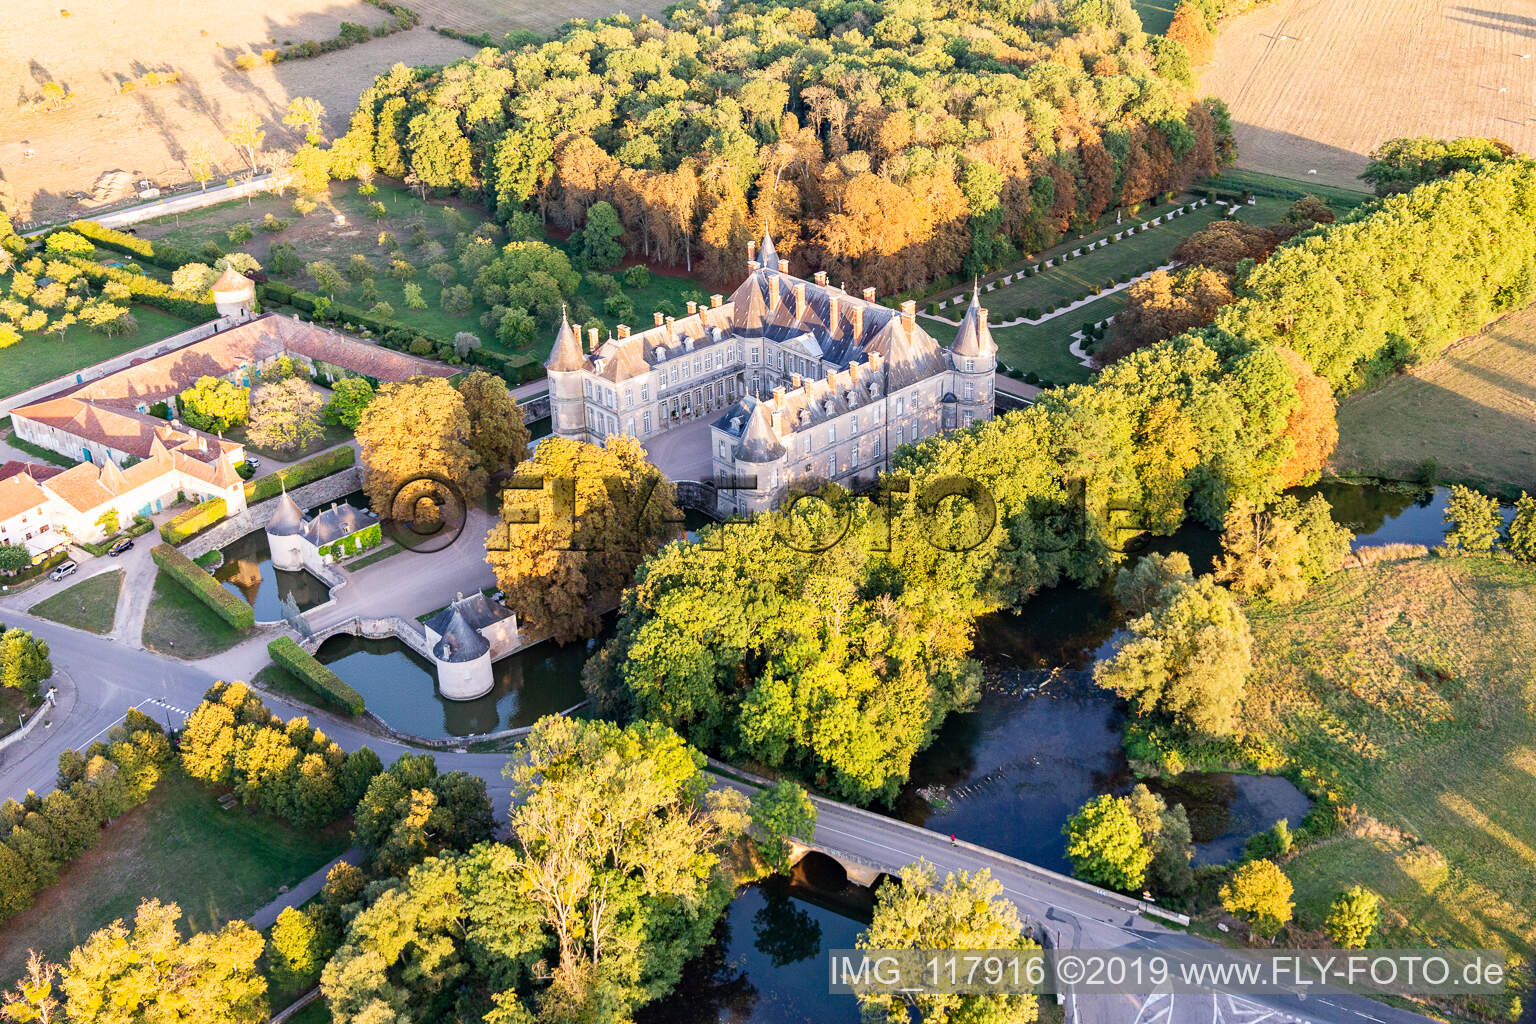 Château de Haroué à Haroué dans le département Meurthe et Moselle, France depuis l'avion